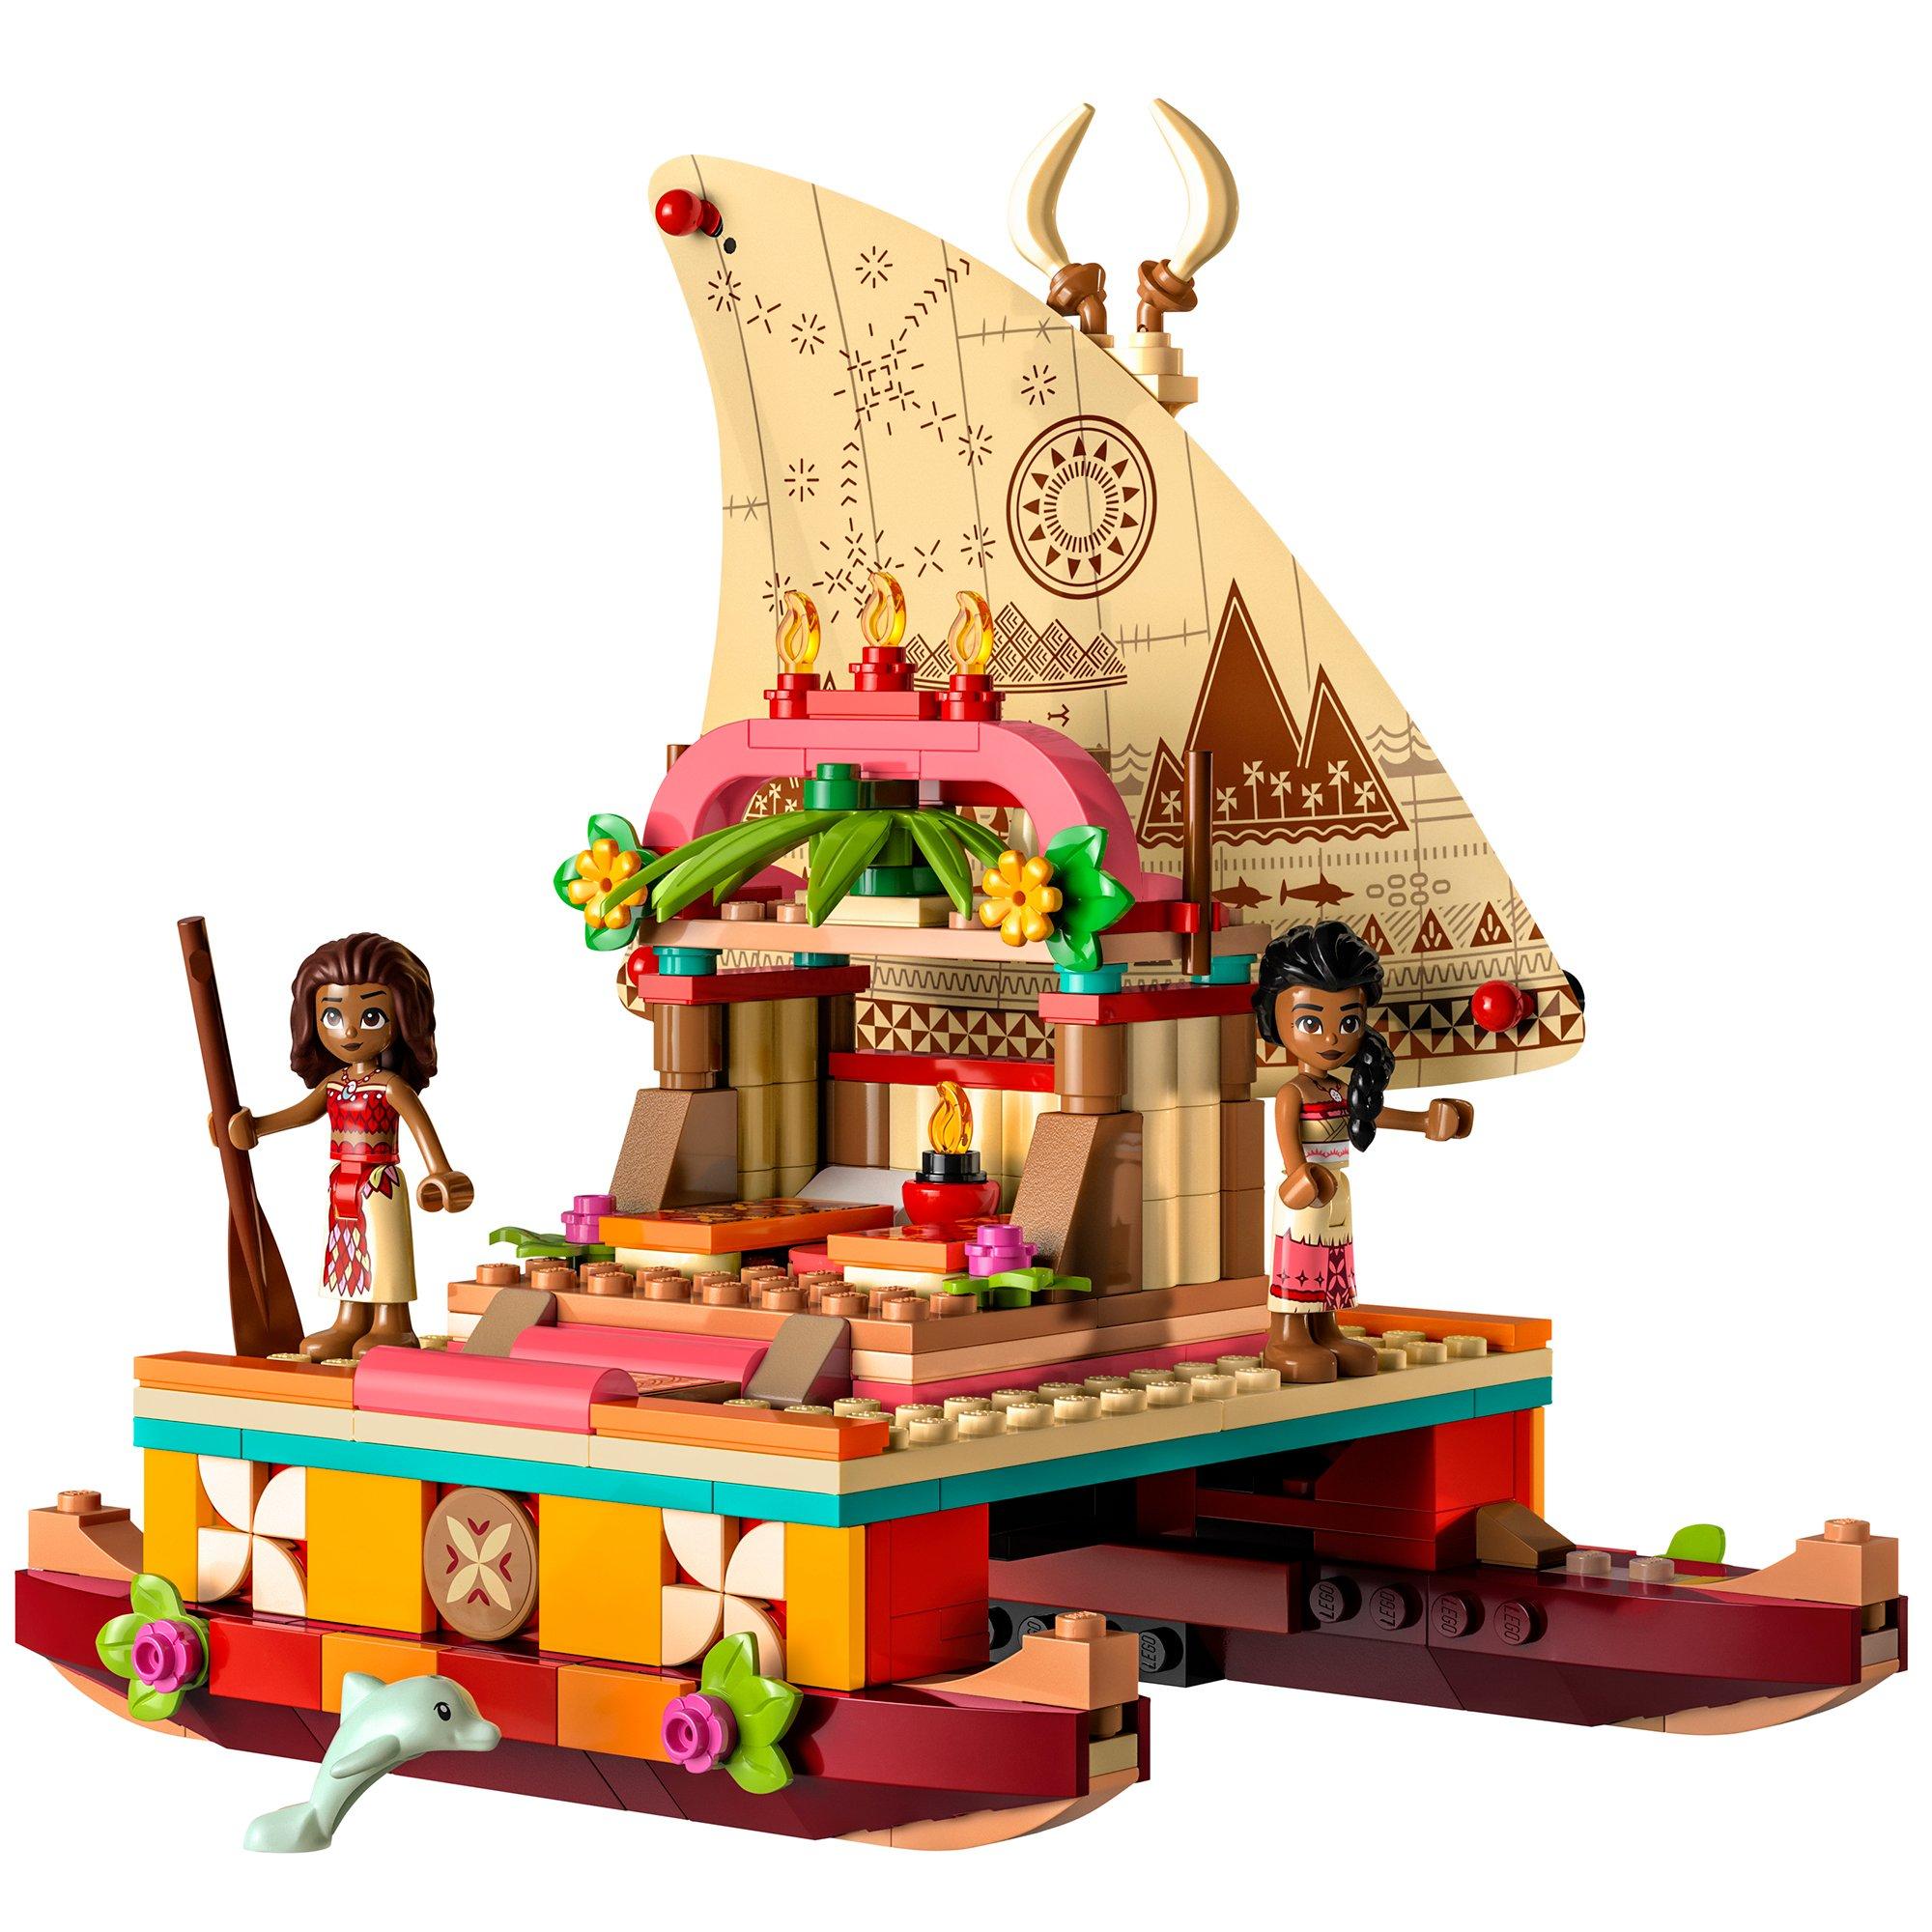 Disney Princess Moana's Wayfinding Boat